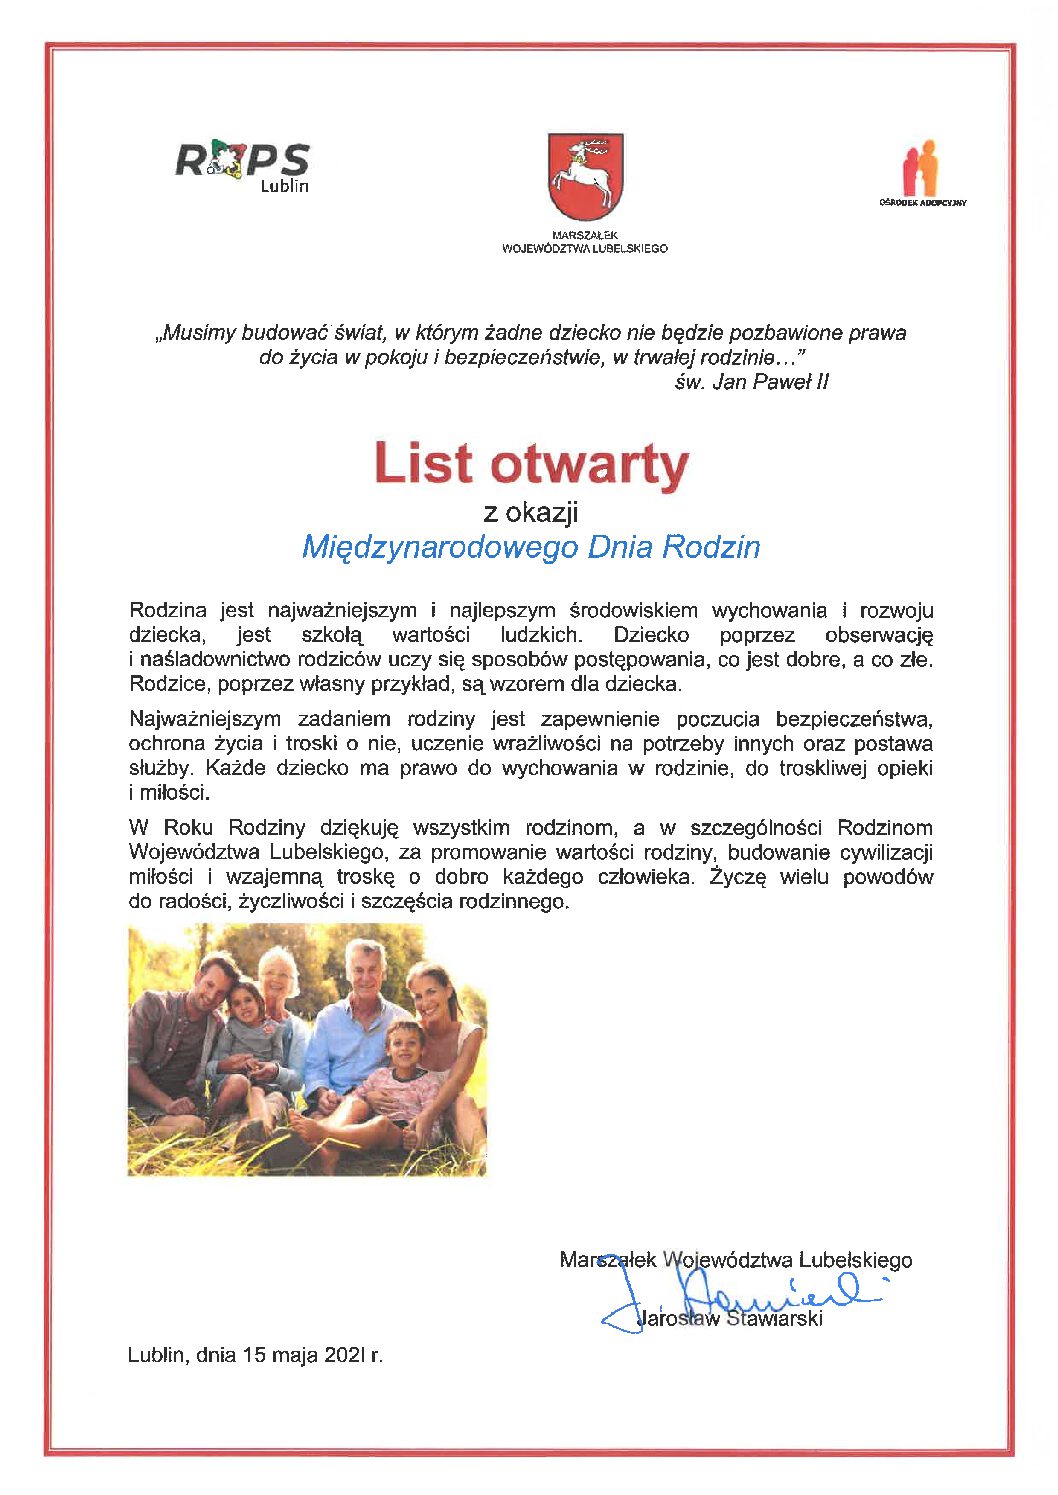 List otwarty Marszałka Województwa Lubelskiego – Jarosława Stawiarskiego z okazji Międzynarodowego Dnia Rodziny